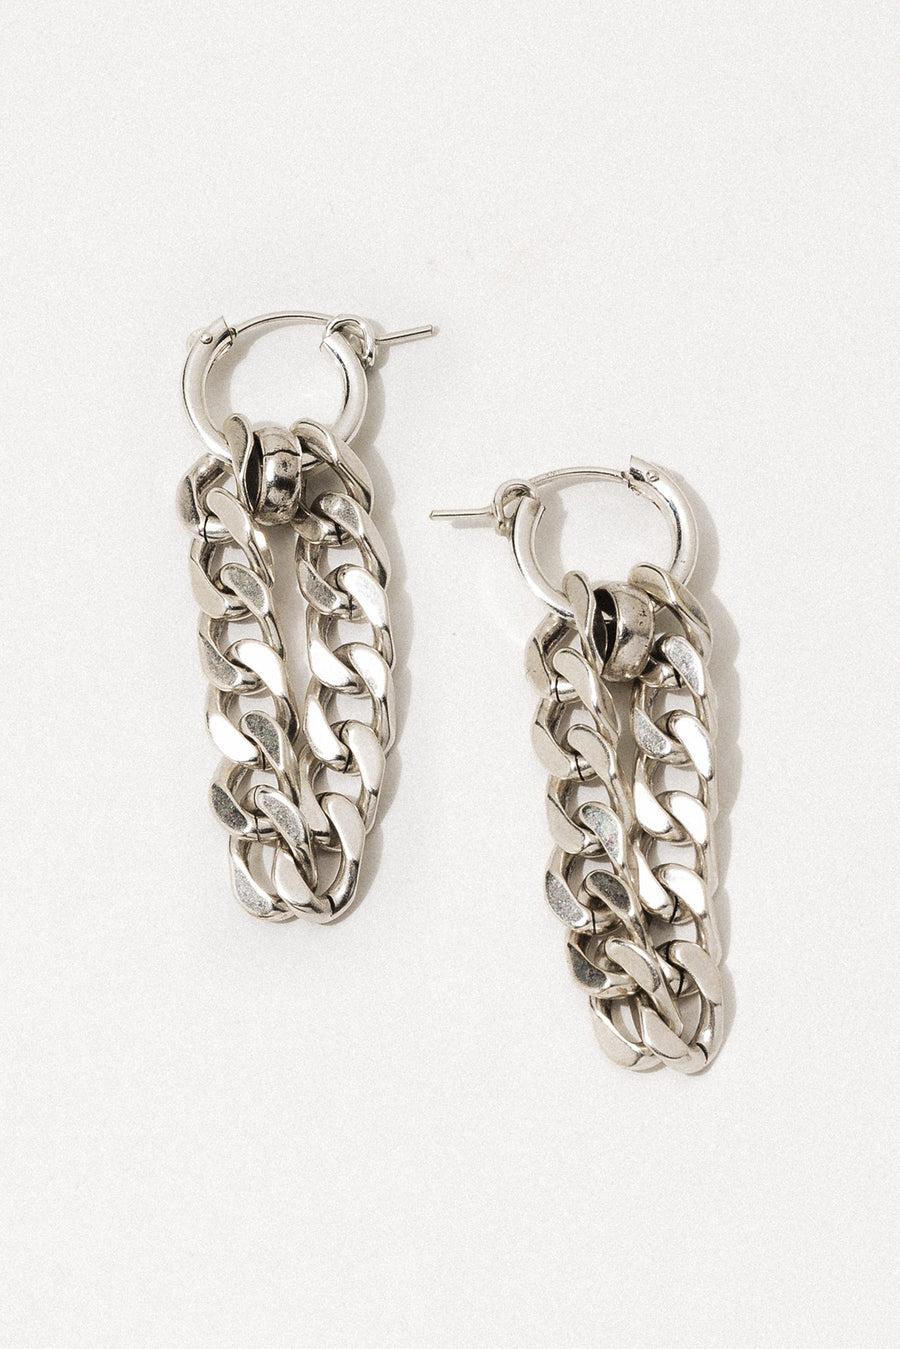 AVEC Jewelry Silver Copy of Lua Ear Cuff Chain & Hoop